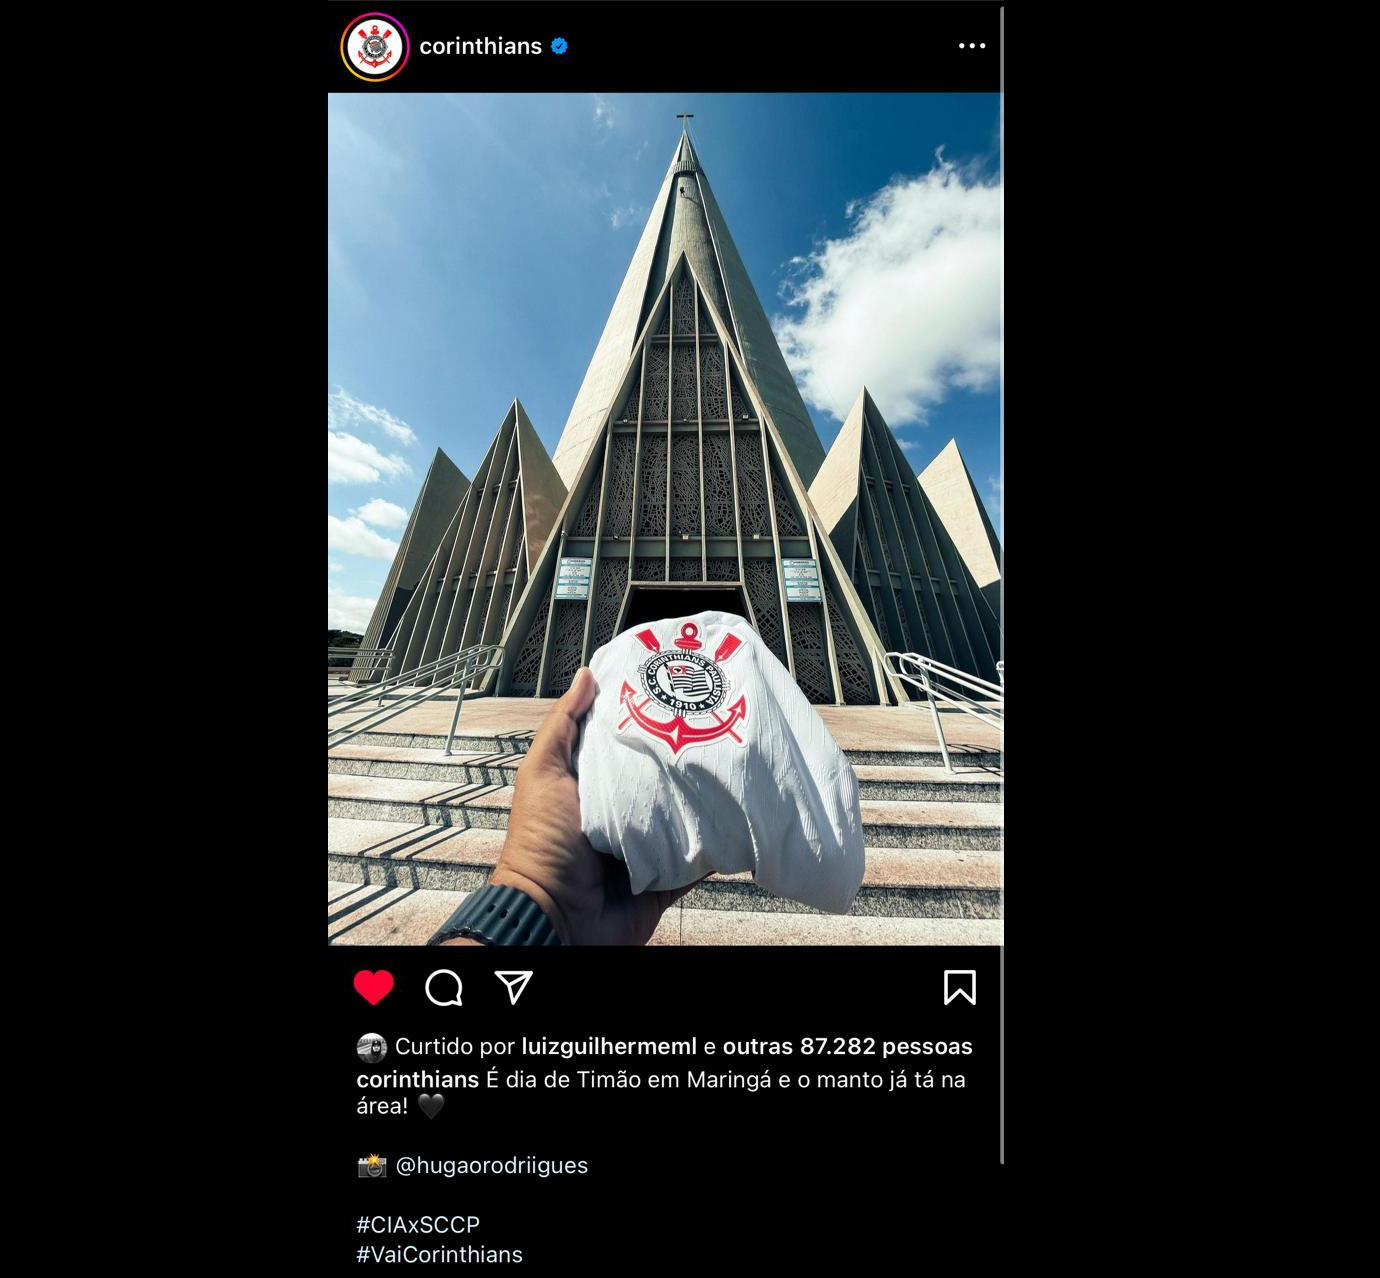 Corinthians posta foto da camisa do time na Catedral “Manto na área”